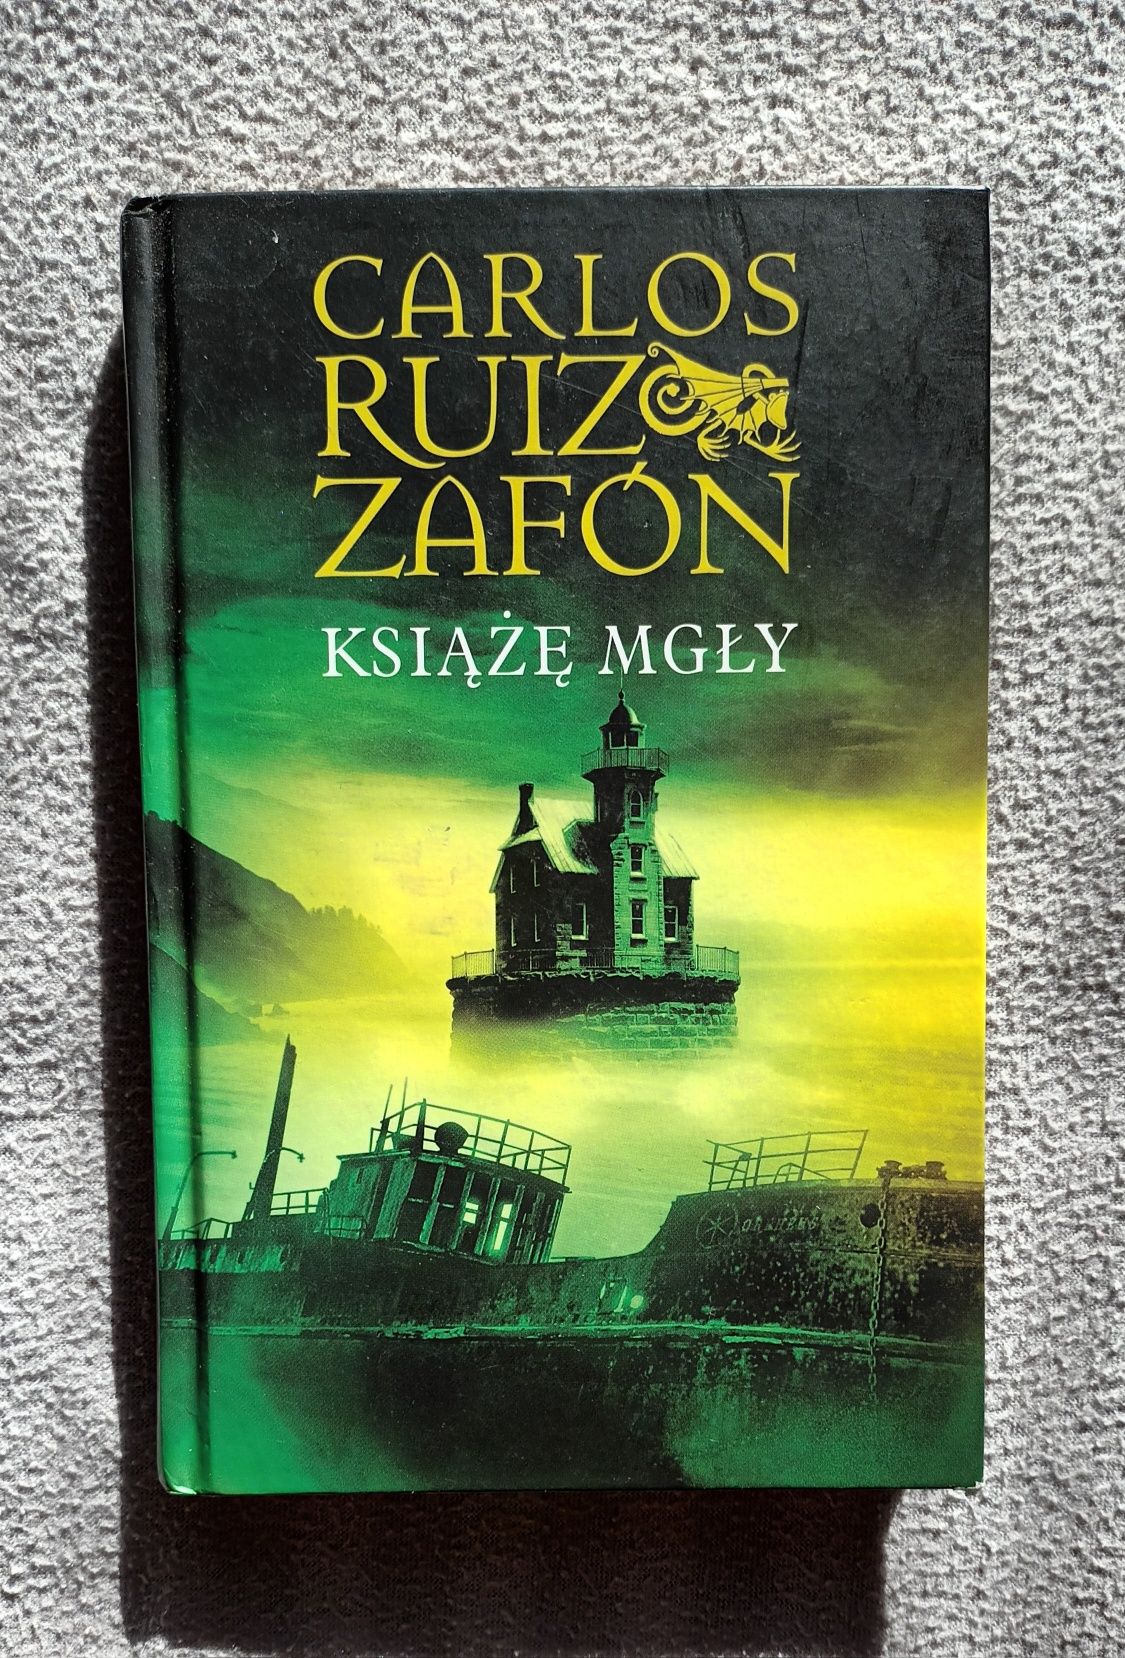 Książę Mgły, Carlos Ruizo Zafon